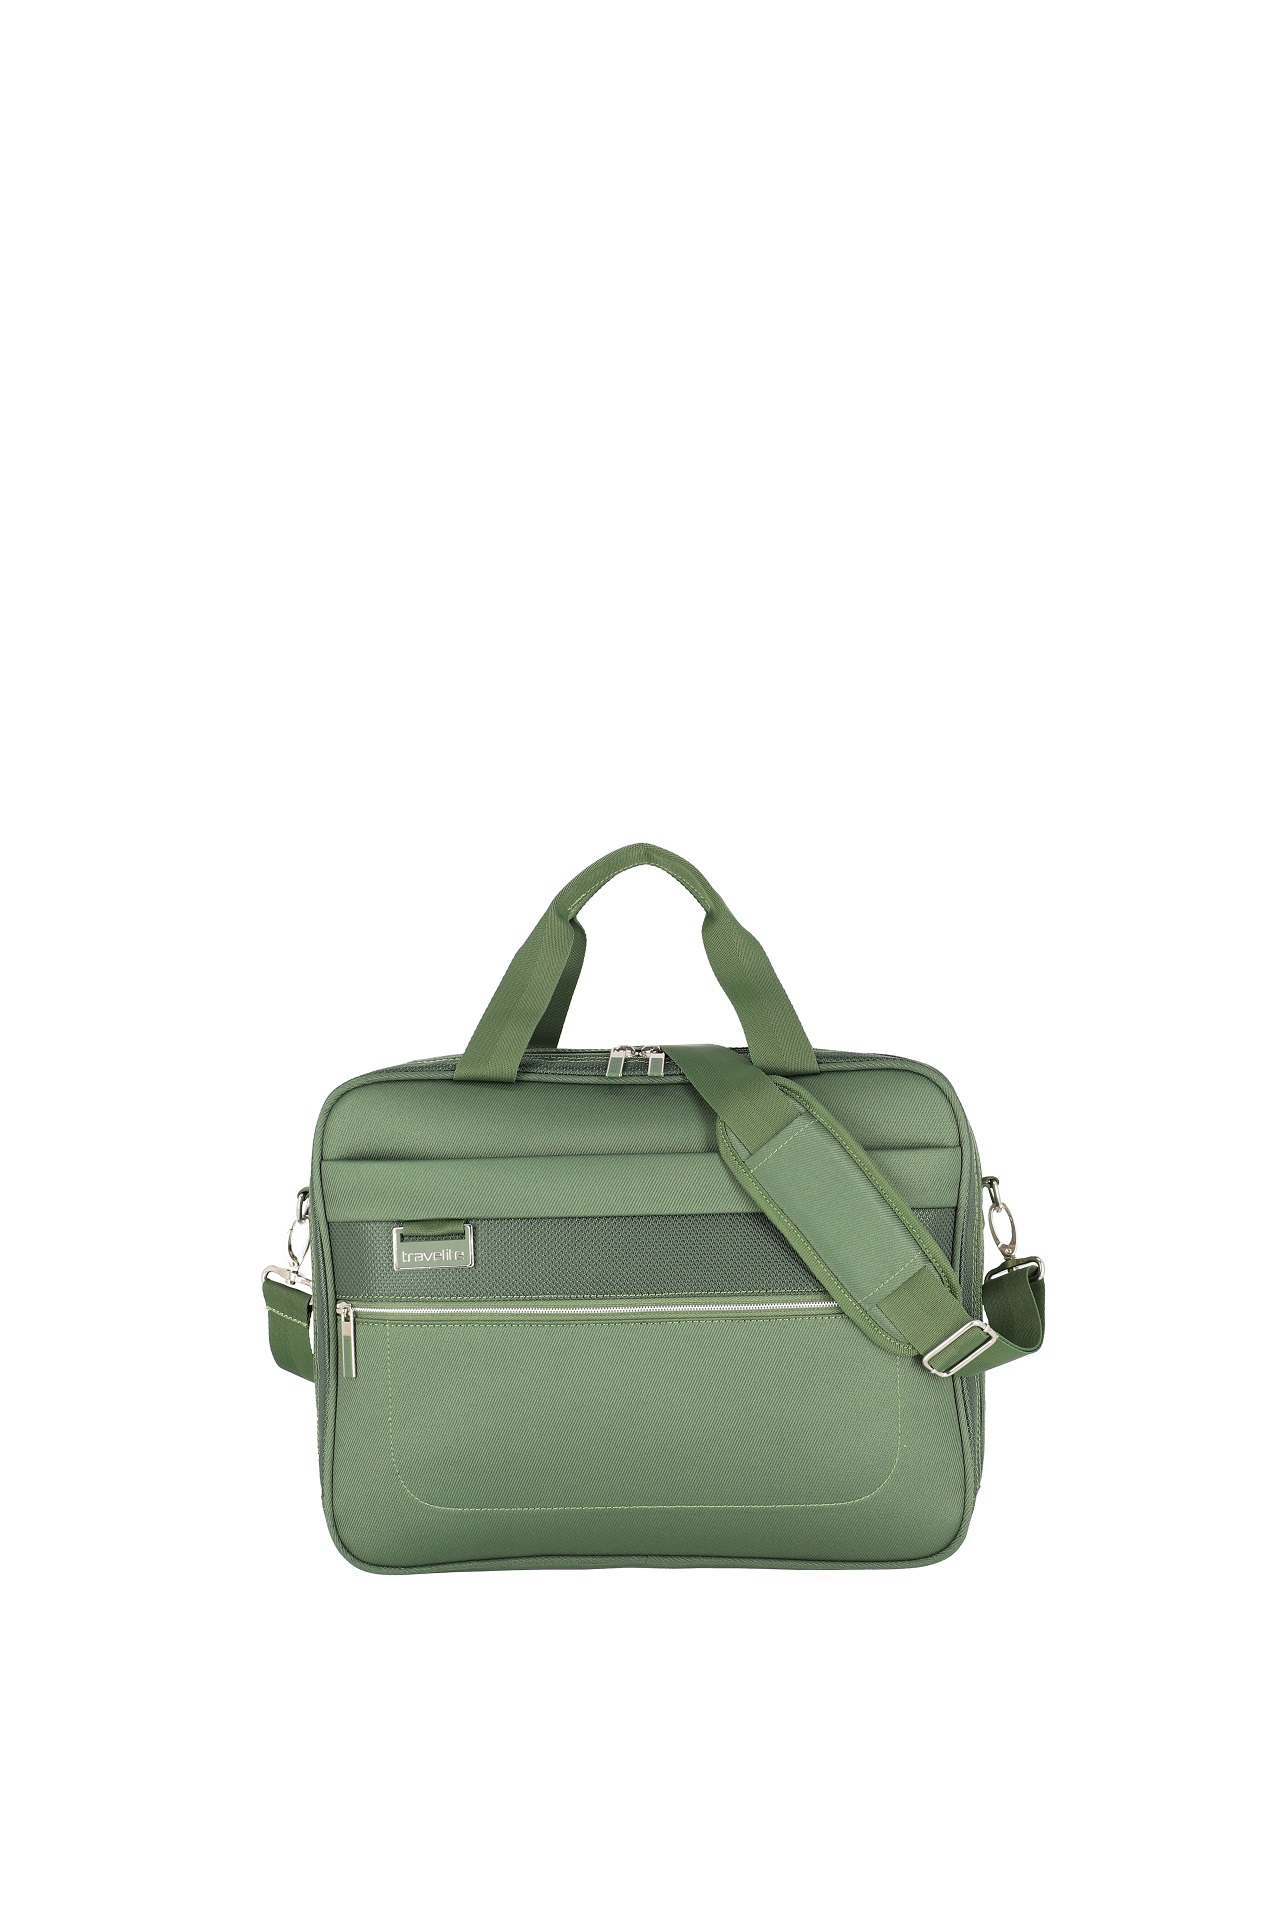 E-shop Travelite Miigo Board bag Green